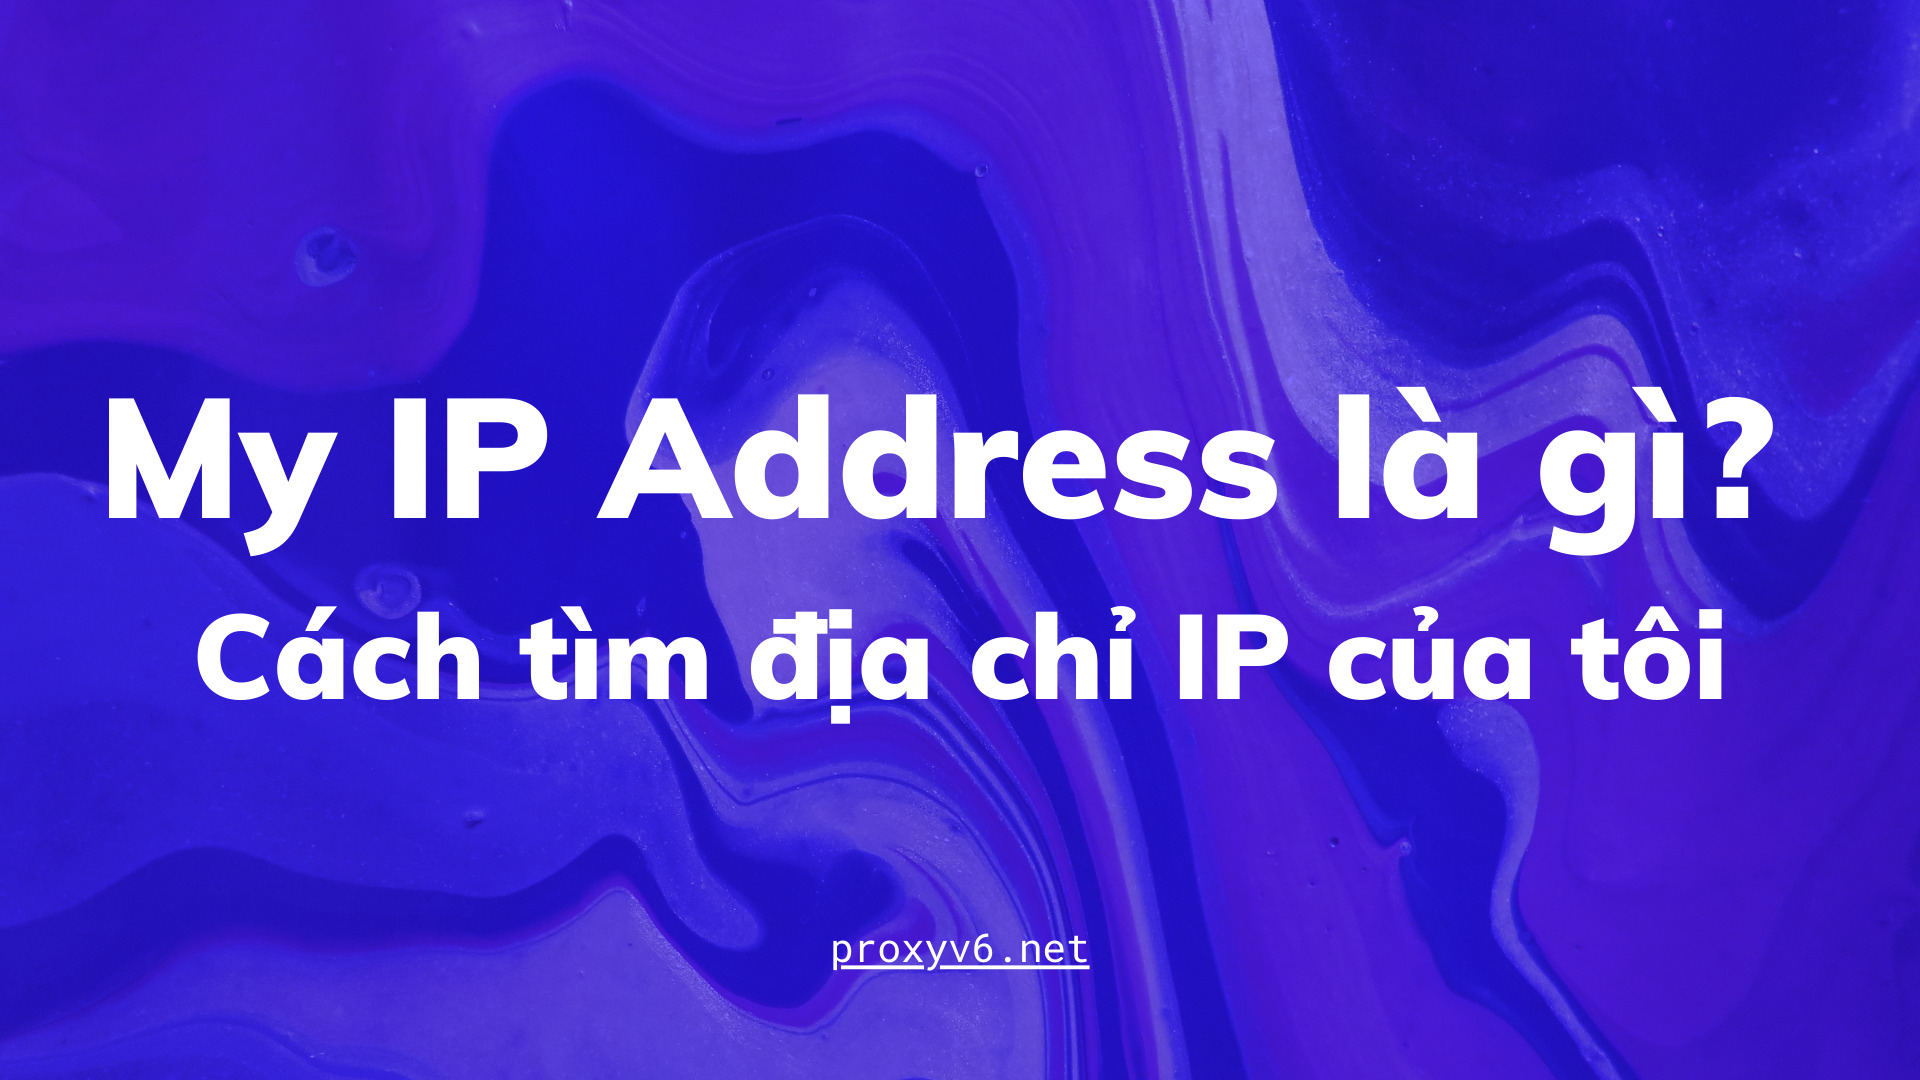 My IP Address là gì? Cách tìm địa chỉ IP của tôi